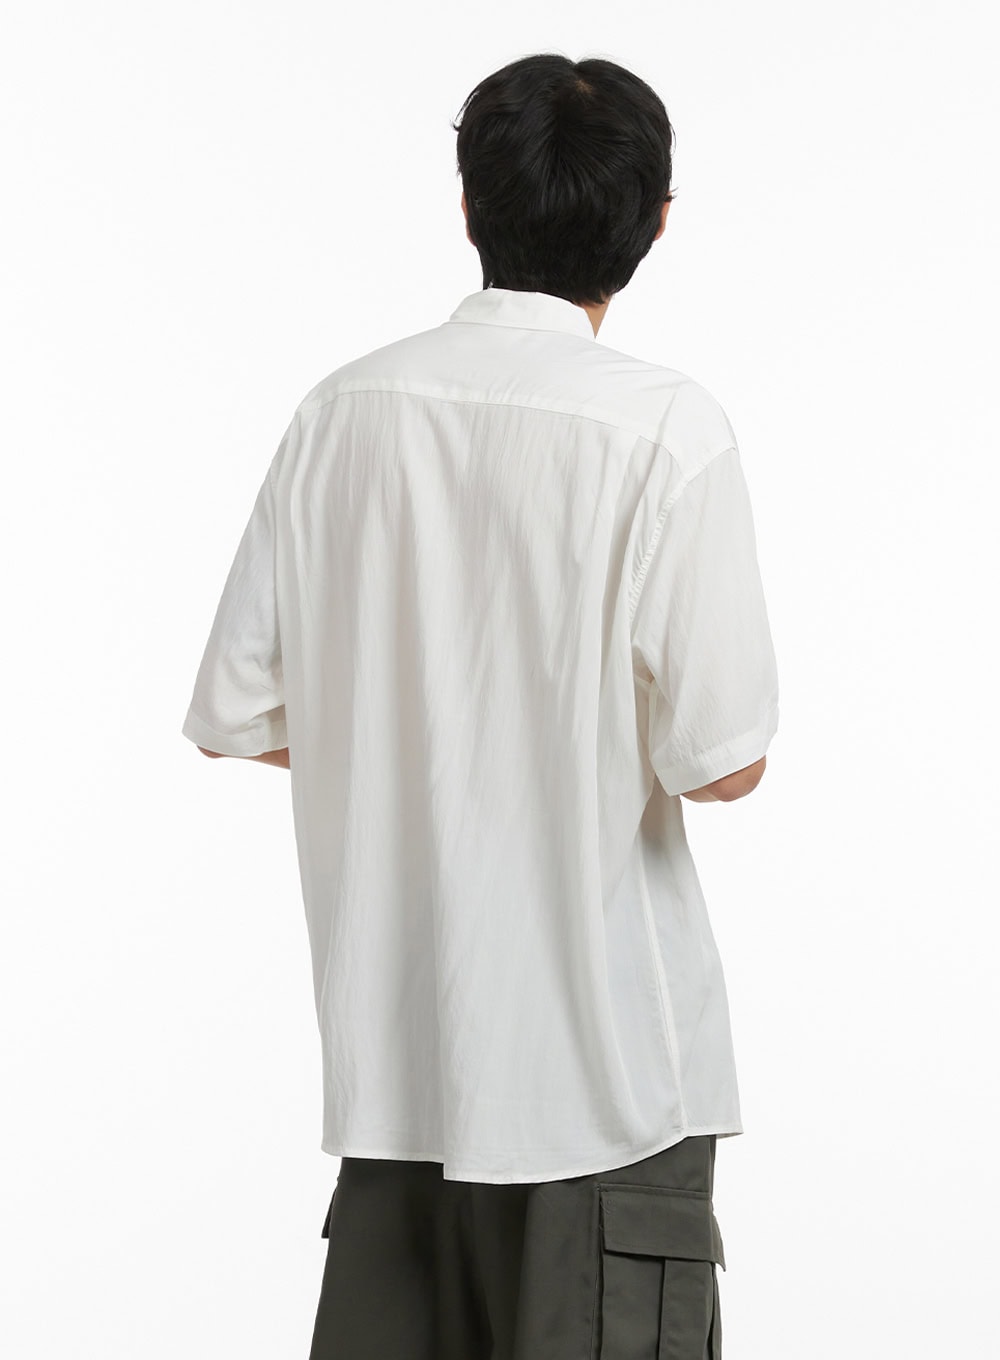 mens-buttoned-collar-short-sleeve-shirt-iy410